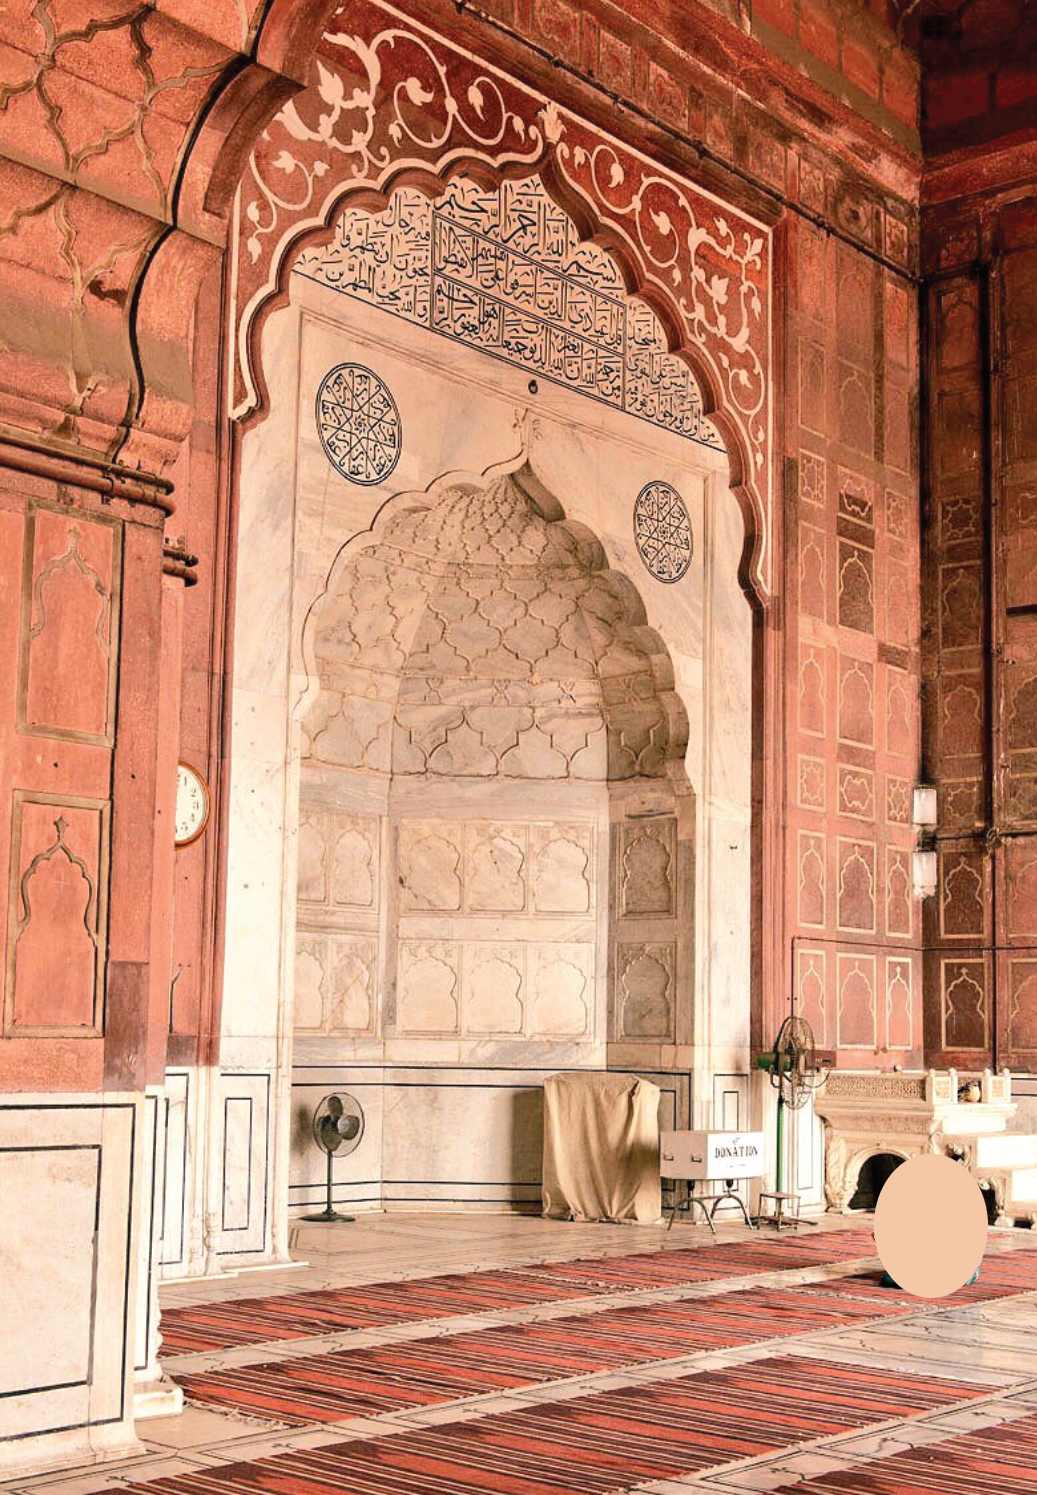 ইসলামী স্থাপত্যর ঐতিহাসিক নিদর্শন দিল্লী শাহী জামে মসজিদ